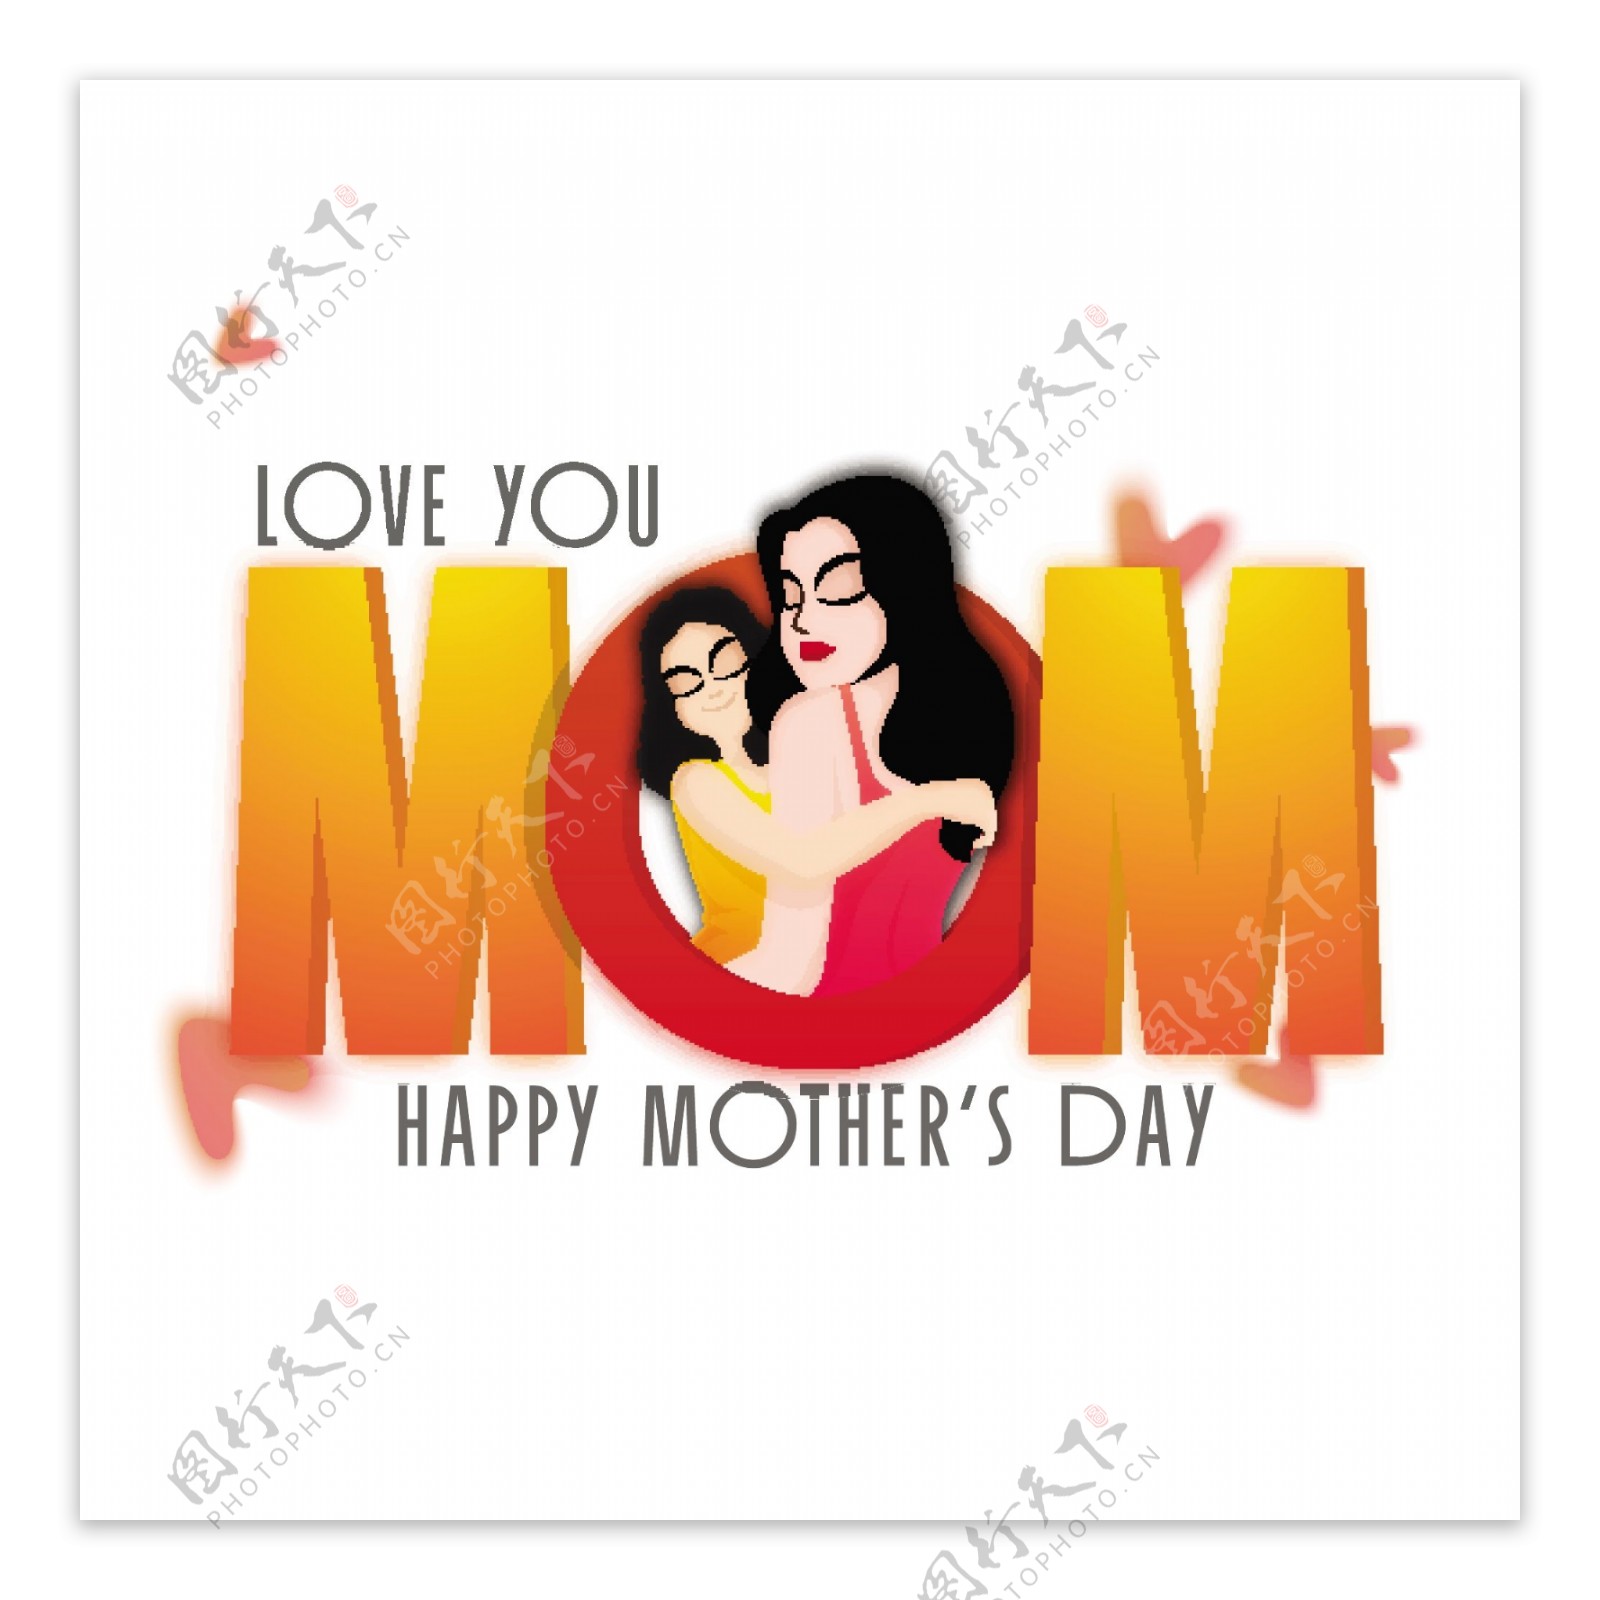 母亲节快乐贺卡设计与3D文本妈妈和插图的女儿拥抱她的母亲